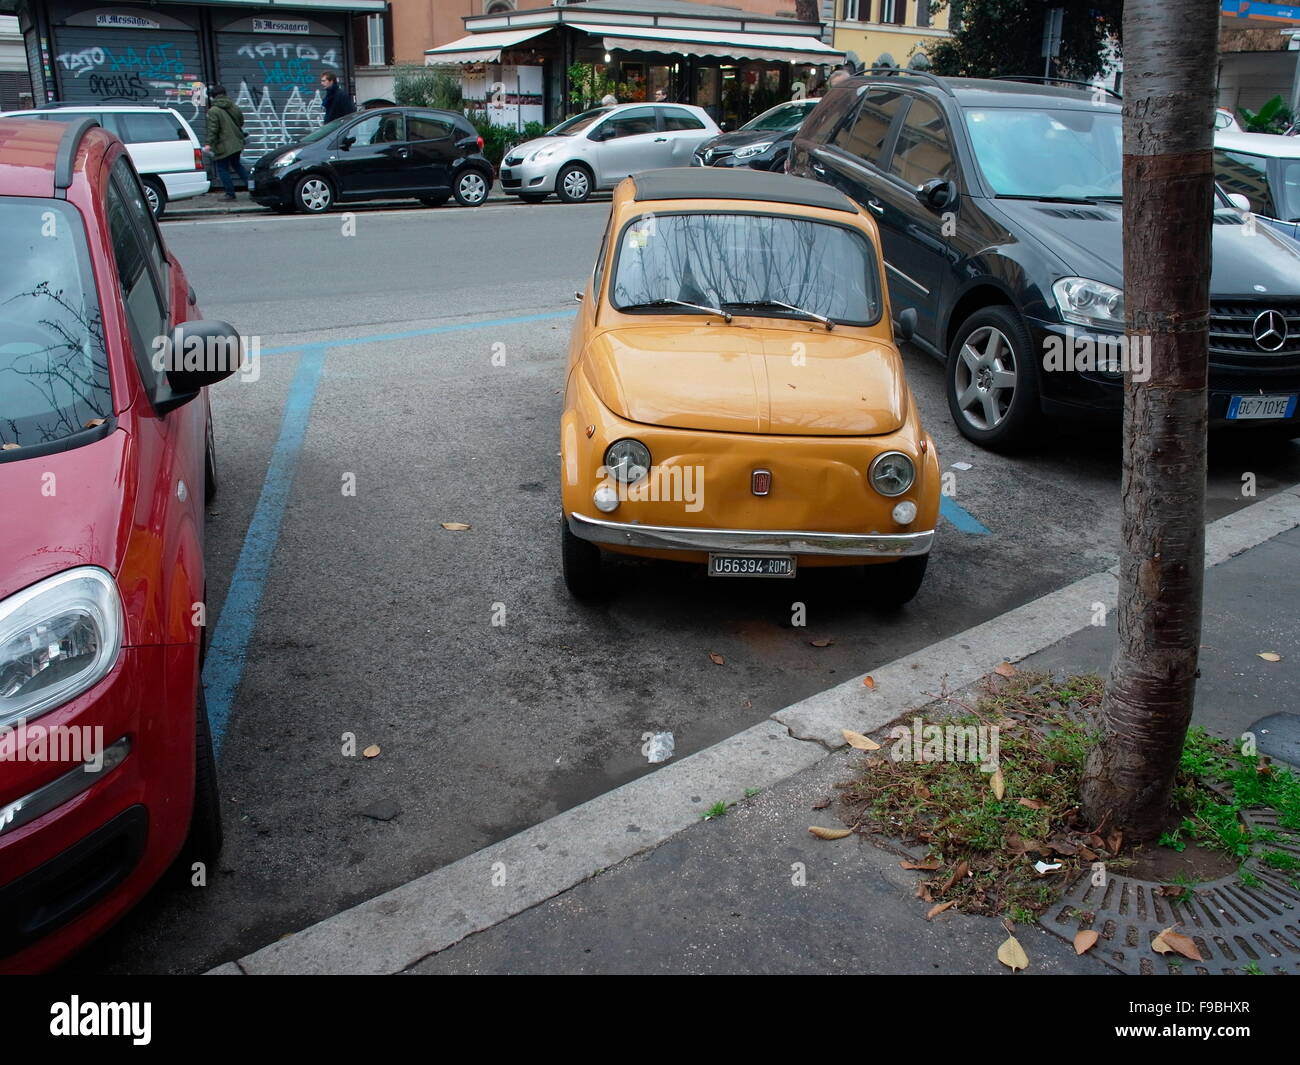 AJAXNETPHOTO. 2015. ROM, ITALIEN. -FIAT 500 CINQUECENTO - DANTE GIACOSA 1957-1975 CITY AUTO SALON ORIGINALMODELL IN DER STADT GEPARKT. FIAT HAT MEHR ALS 3 MILLIONEN DIESER FAHRZEUGE VOR PRODUKTIONSENDE. FOTO: JONATHAN EASTLAND/AJAX REF: GX151012 758884 Stockfoto